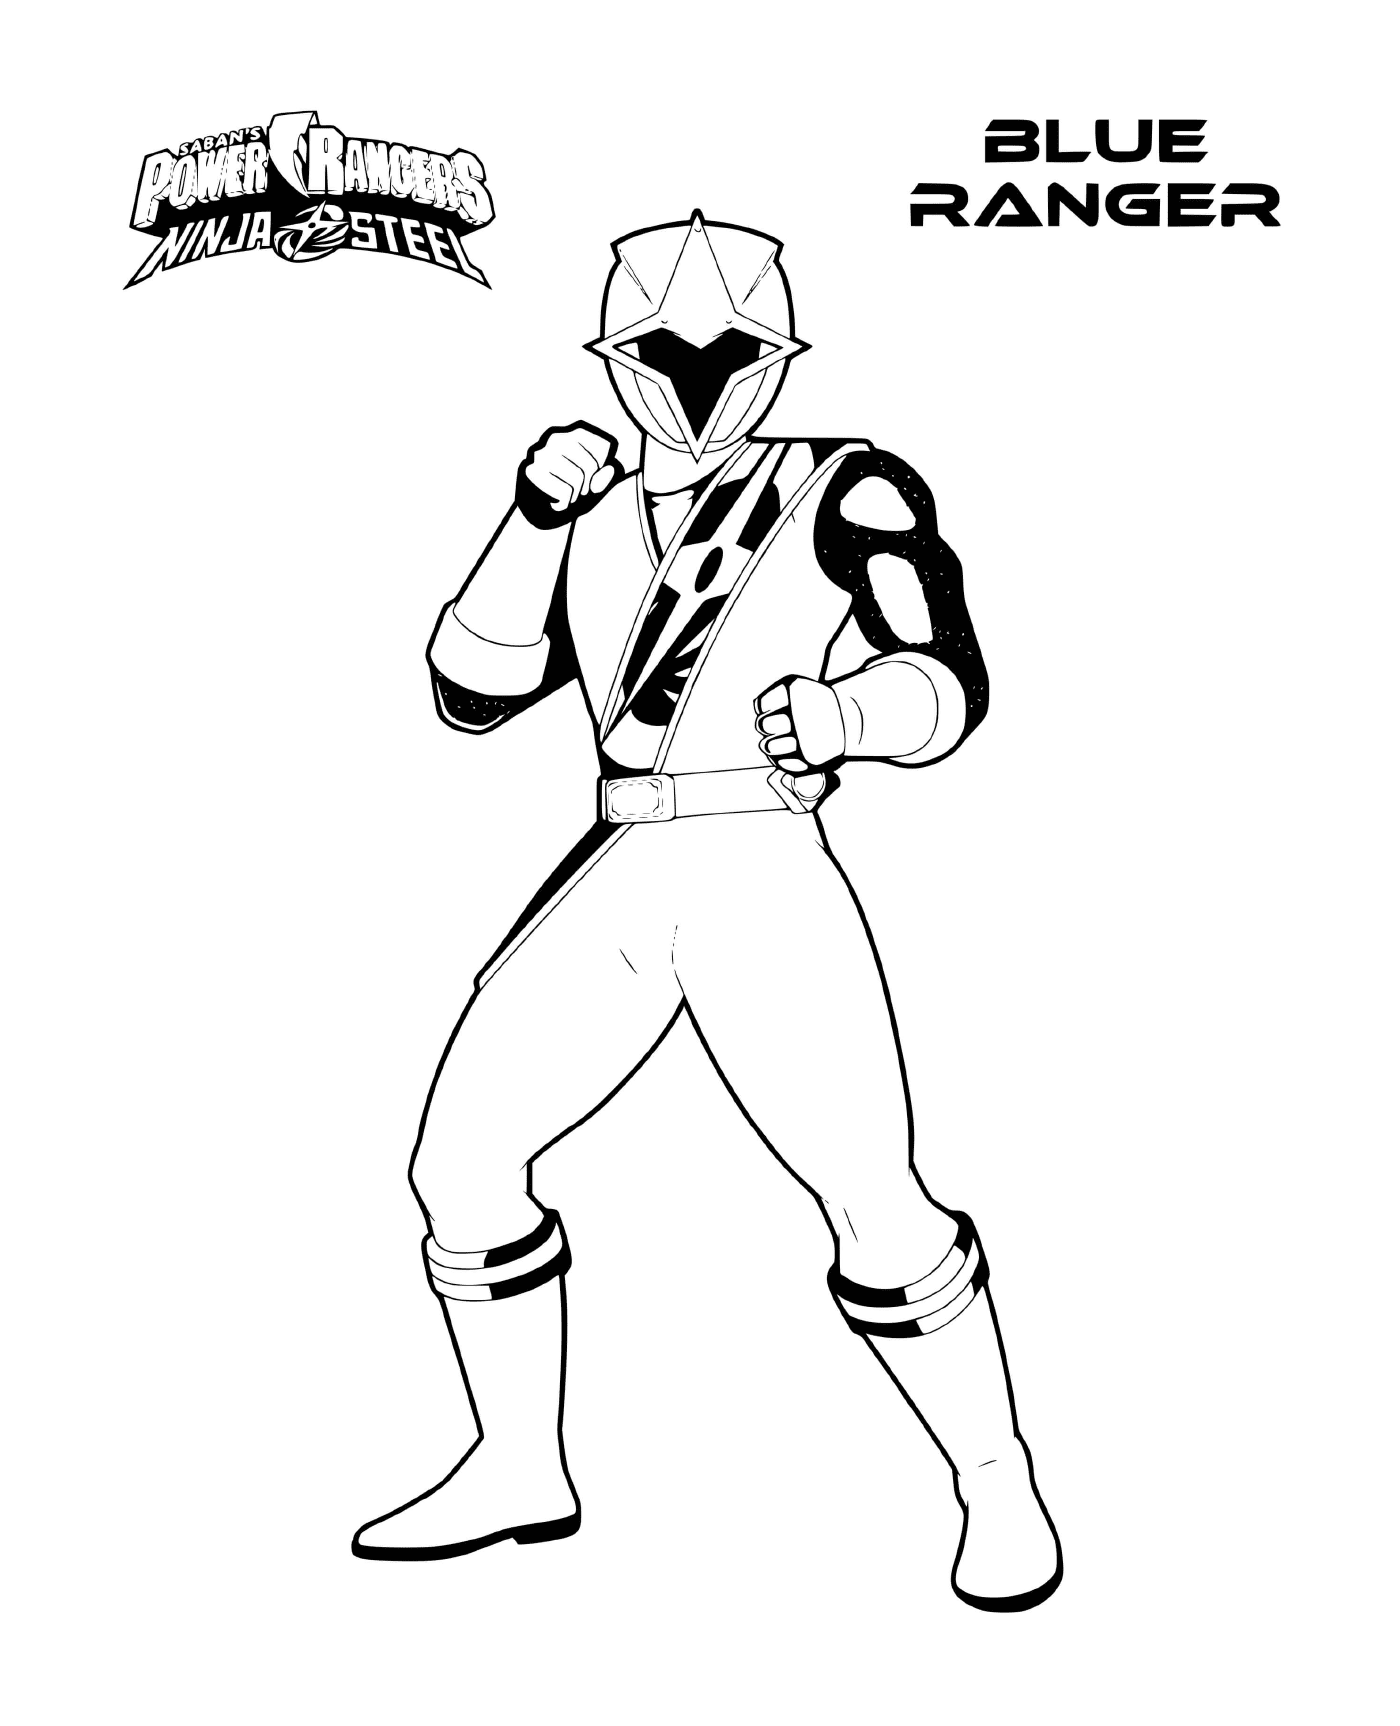   Power Rangers Steel - Ranger Bleu 